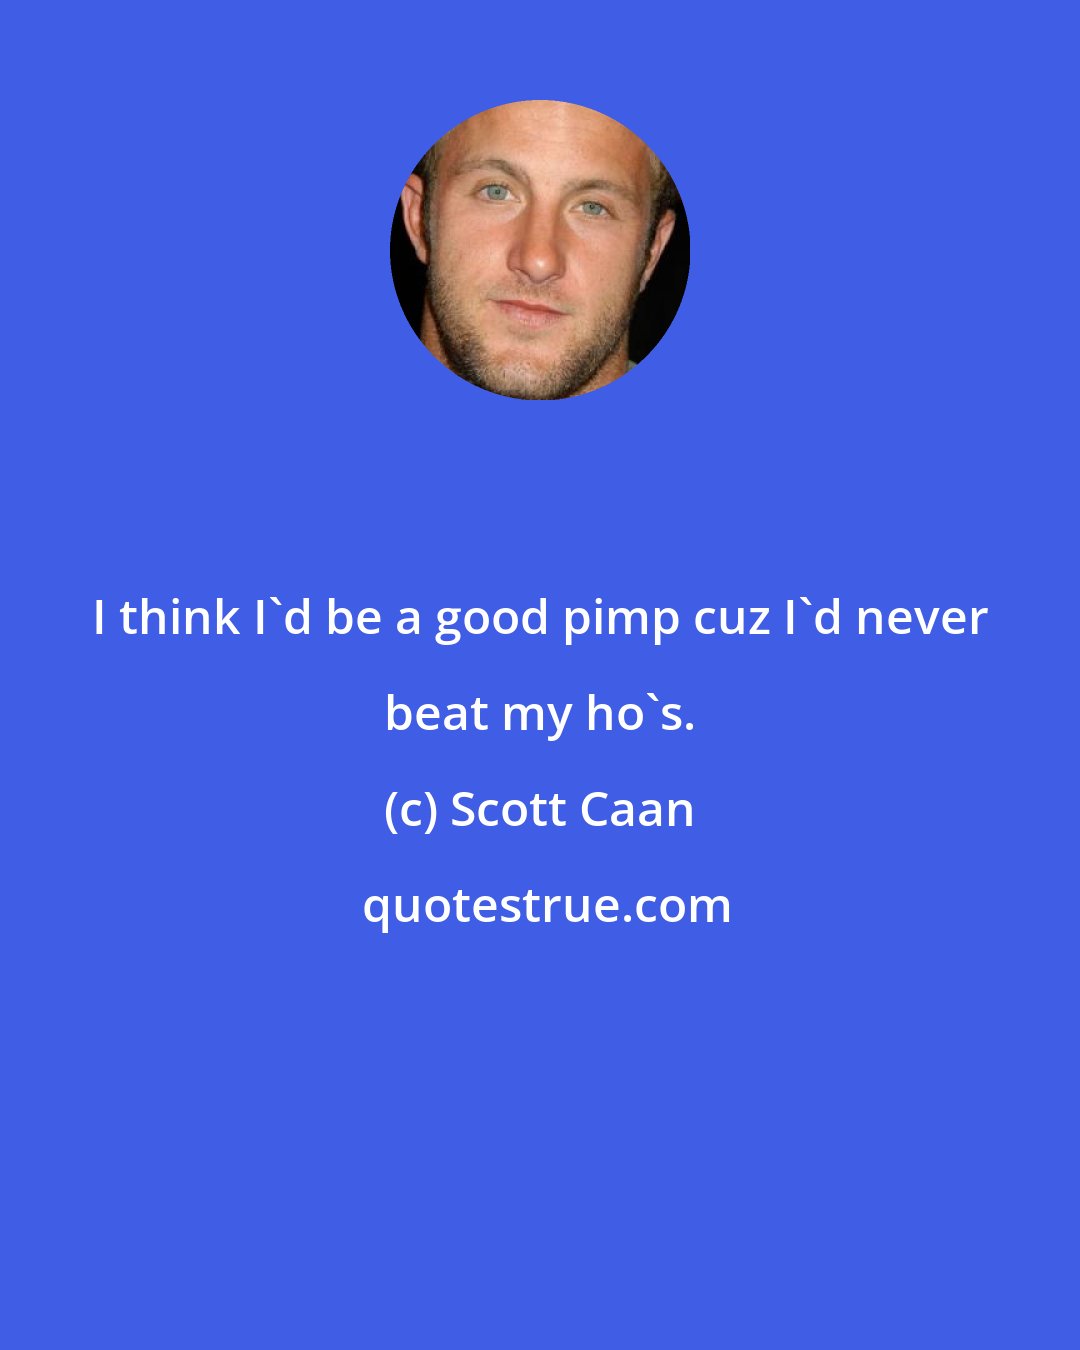 Scott Caan: I think I'd be a good pimp cuz I'd never beat my ho's.